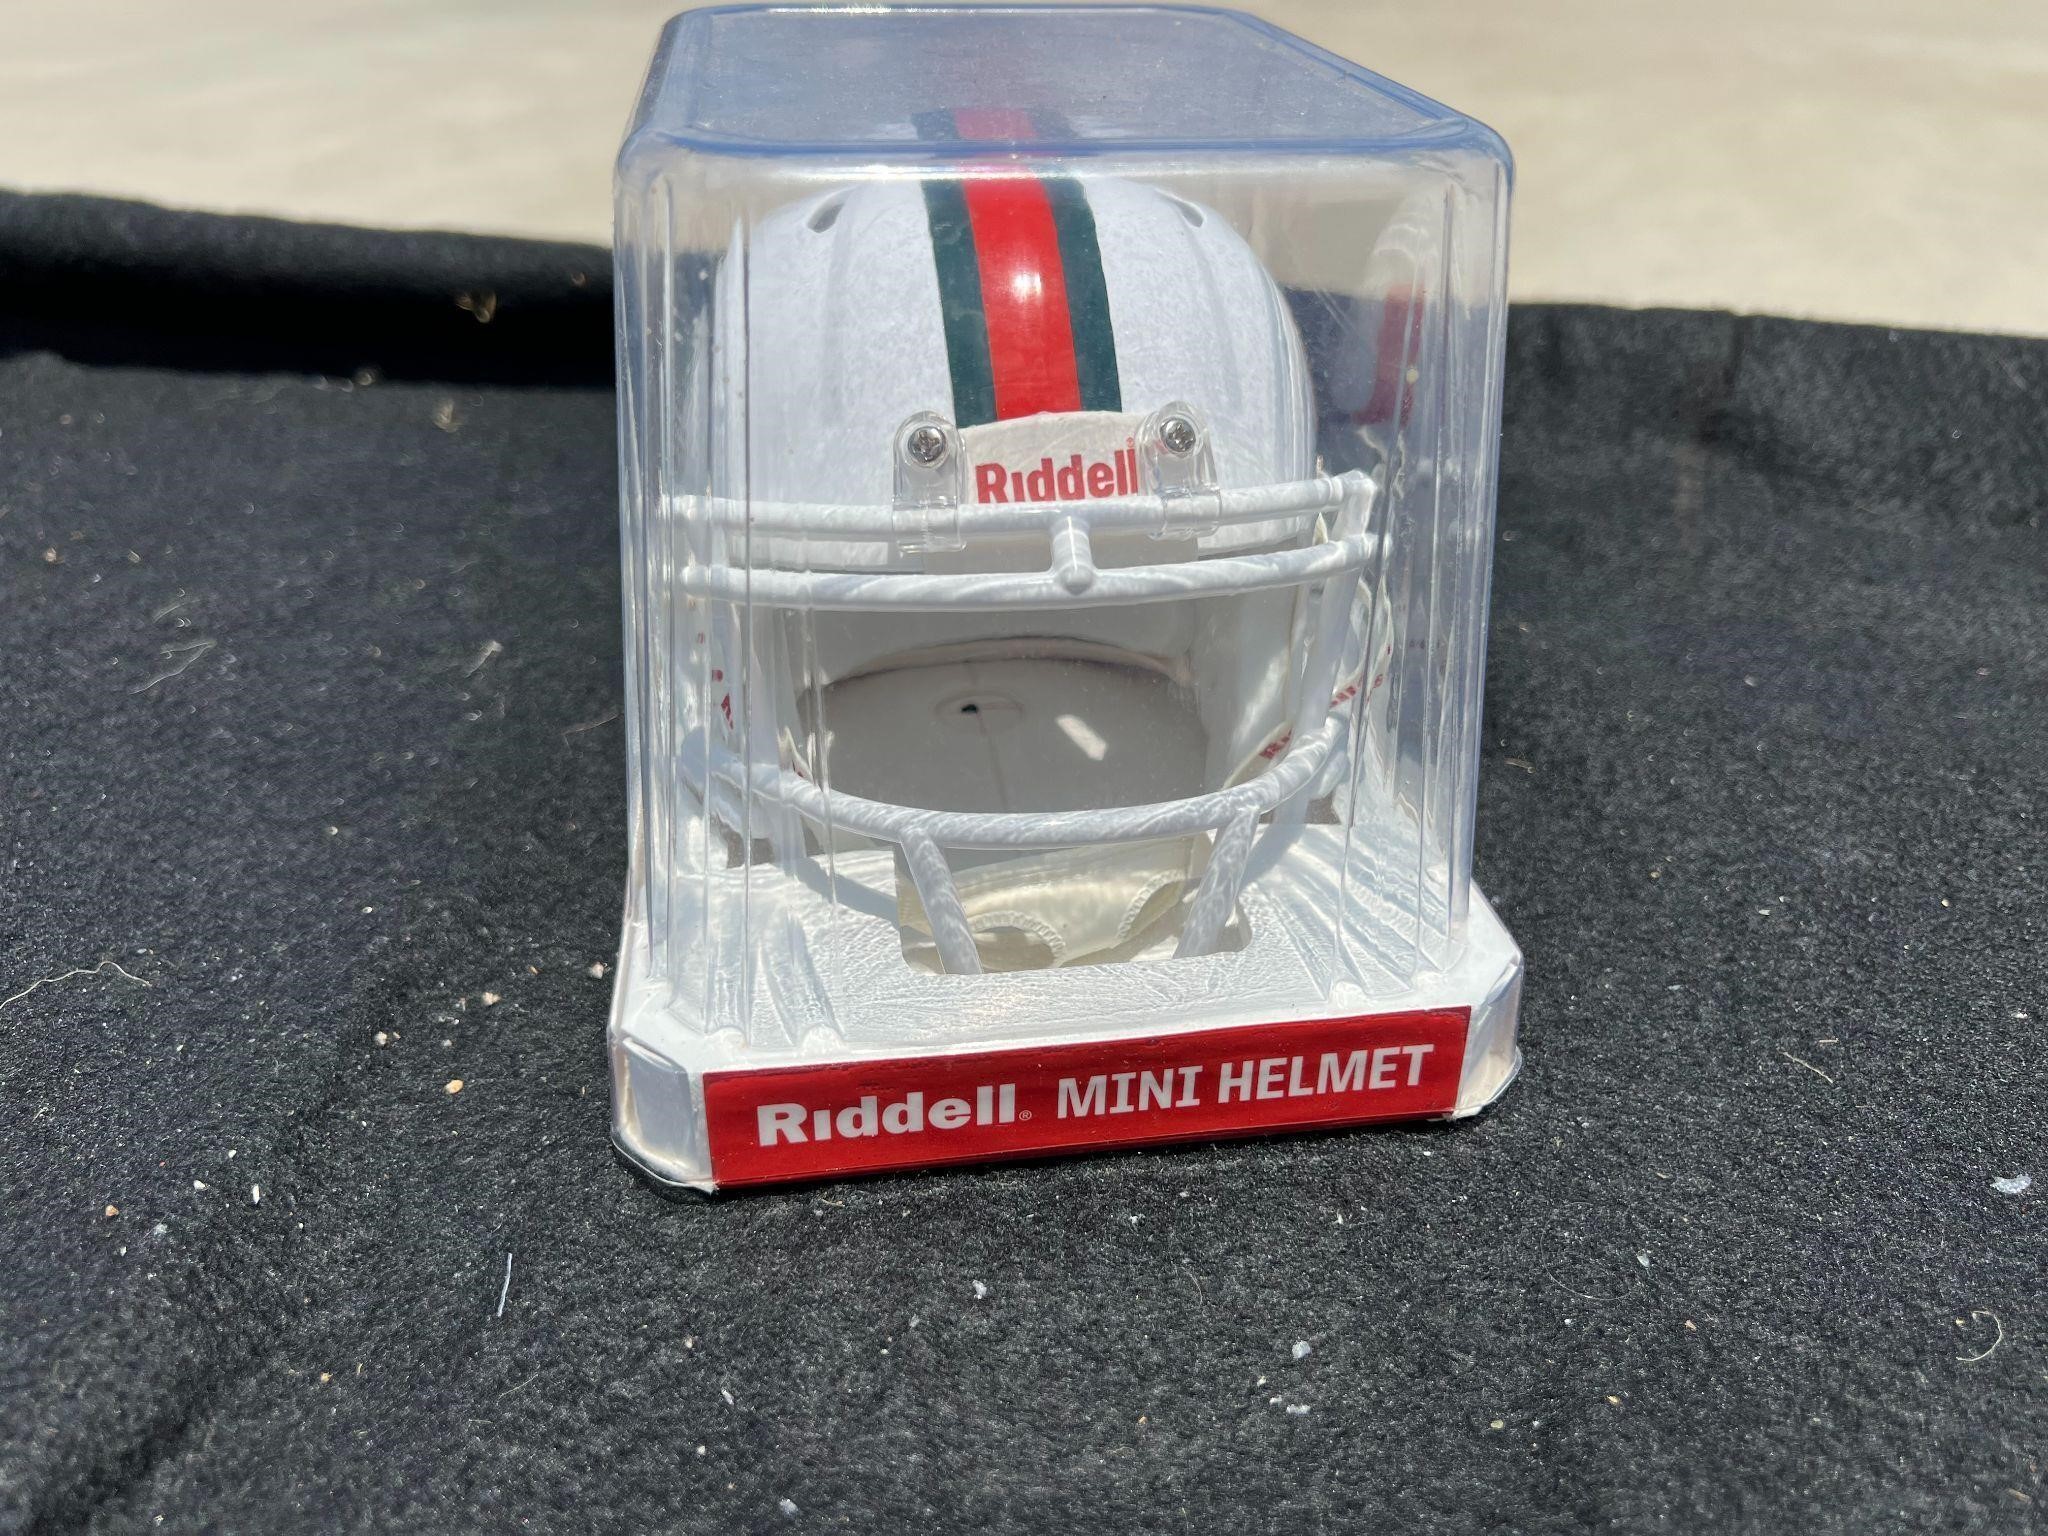 Riddell Mini Helmet